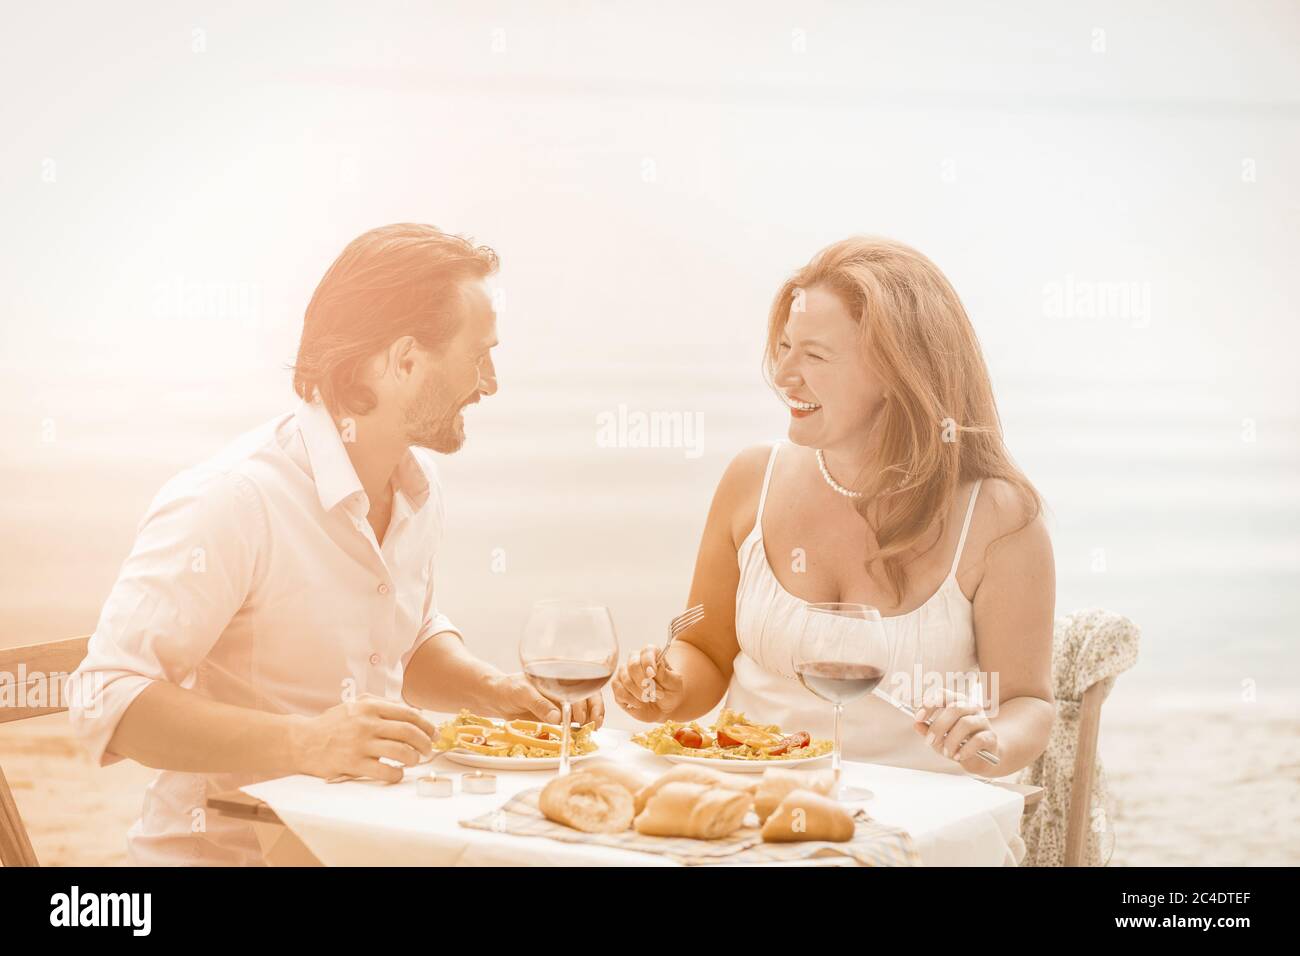 Les romantiques passent du temps ensemble sur fond de mer. Un couple de Caucasiens heureux se reposant dans un café de plage le jour d'été ensoleillé. Image teintée Banque D'Images